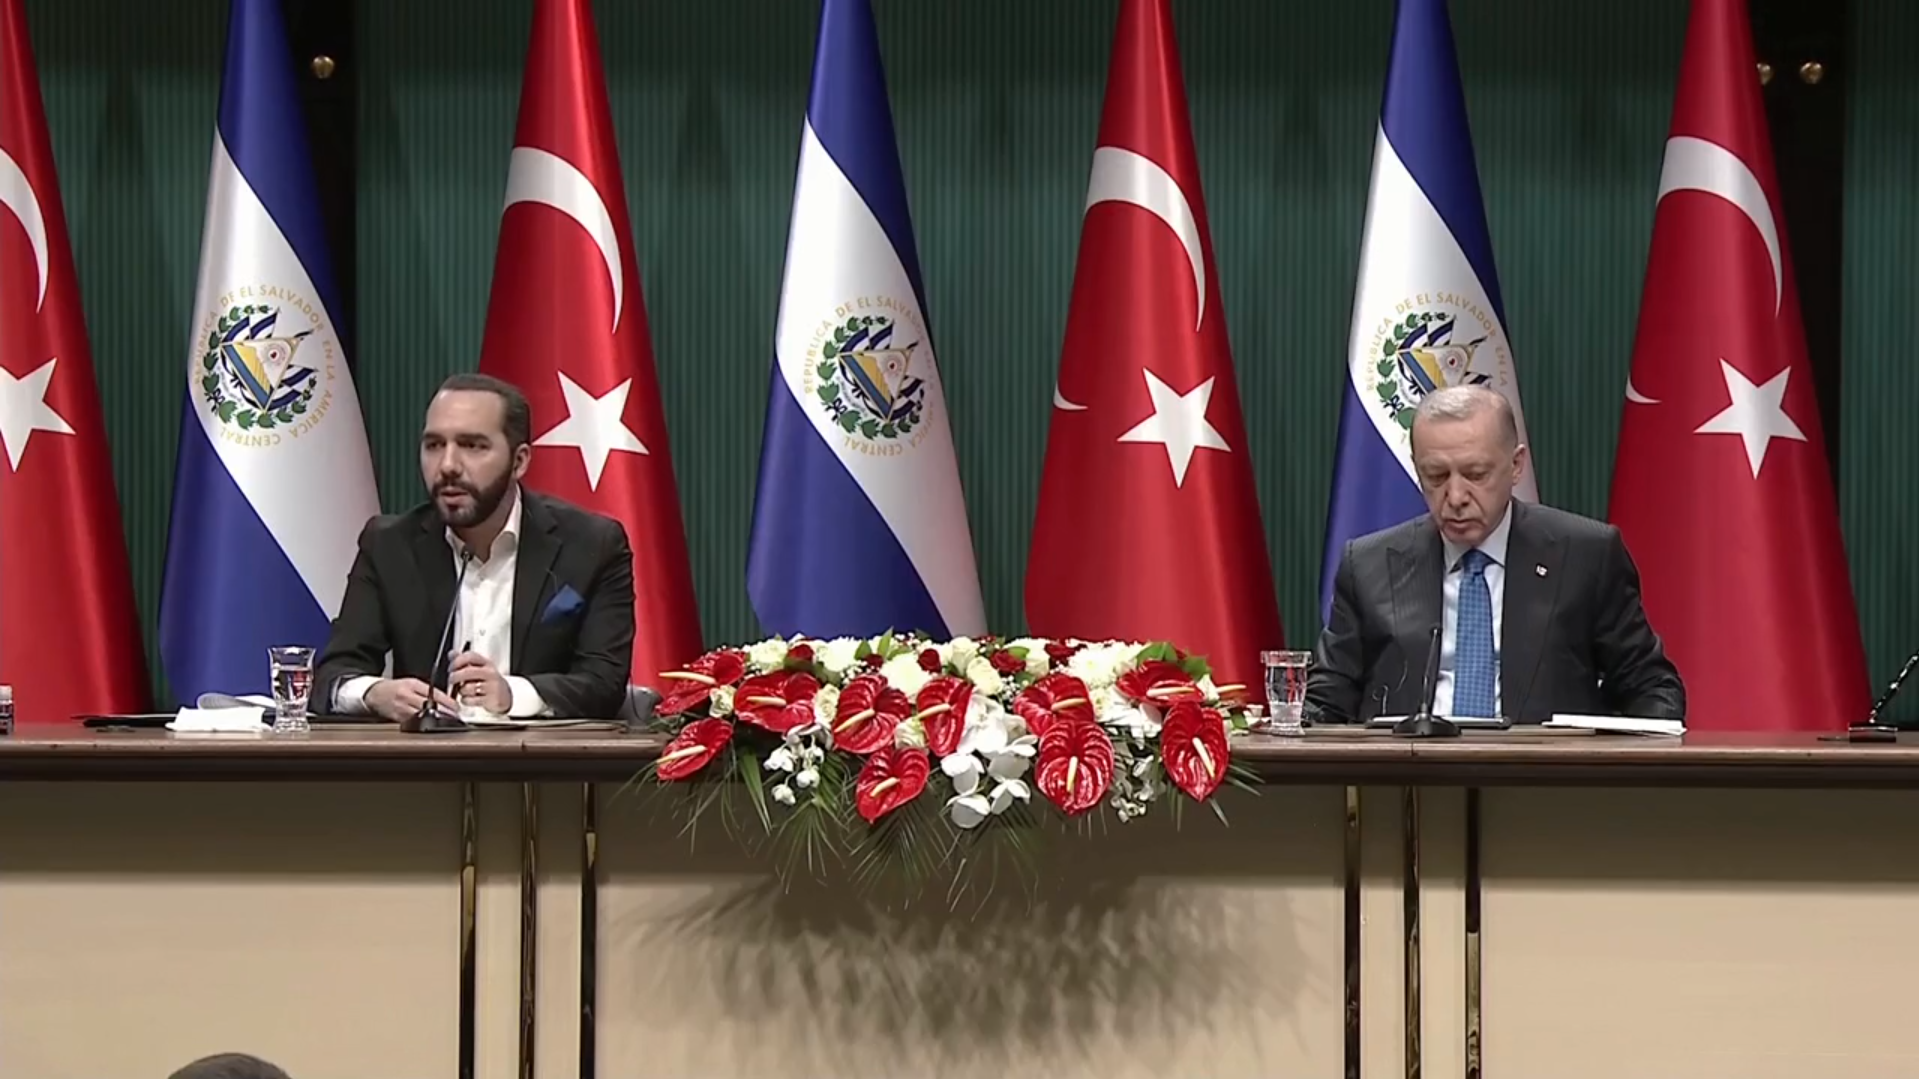 El Salvador ile imzalar atıldı! Cumhurbaşkanı Erdoğan ile Nayib Bukele'den önemli açıklamalar